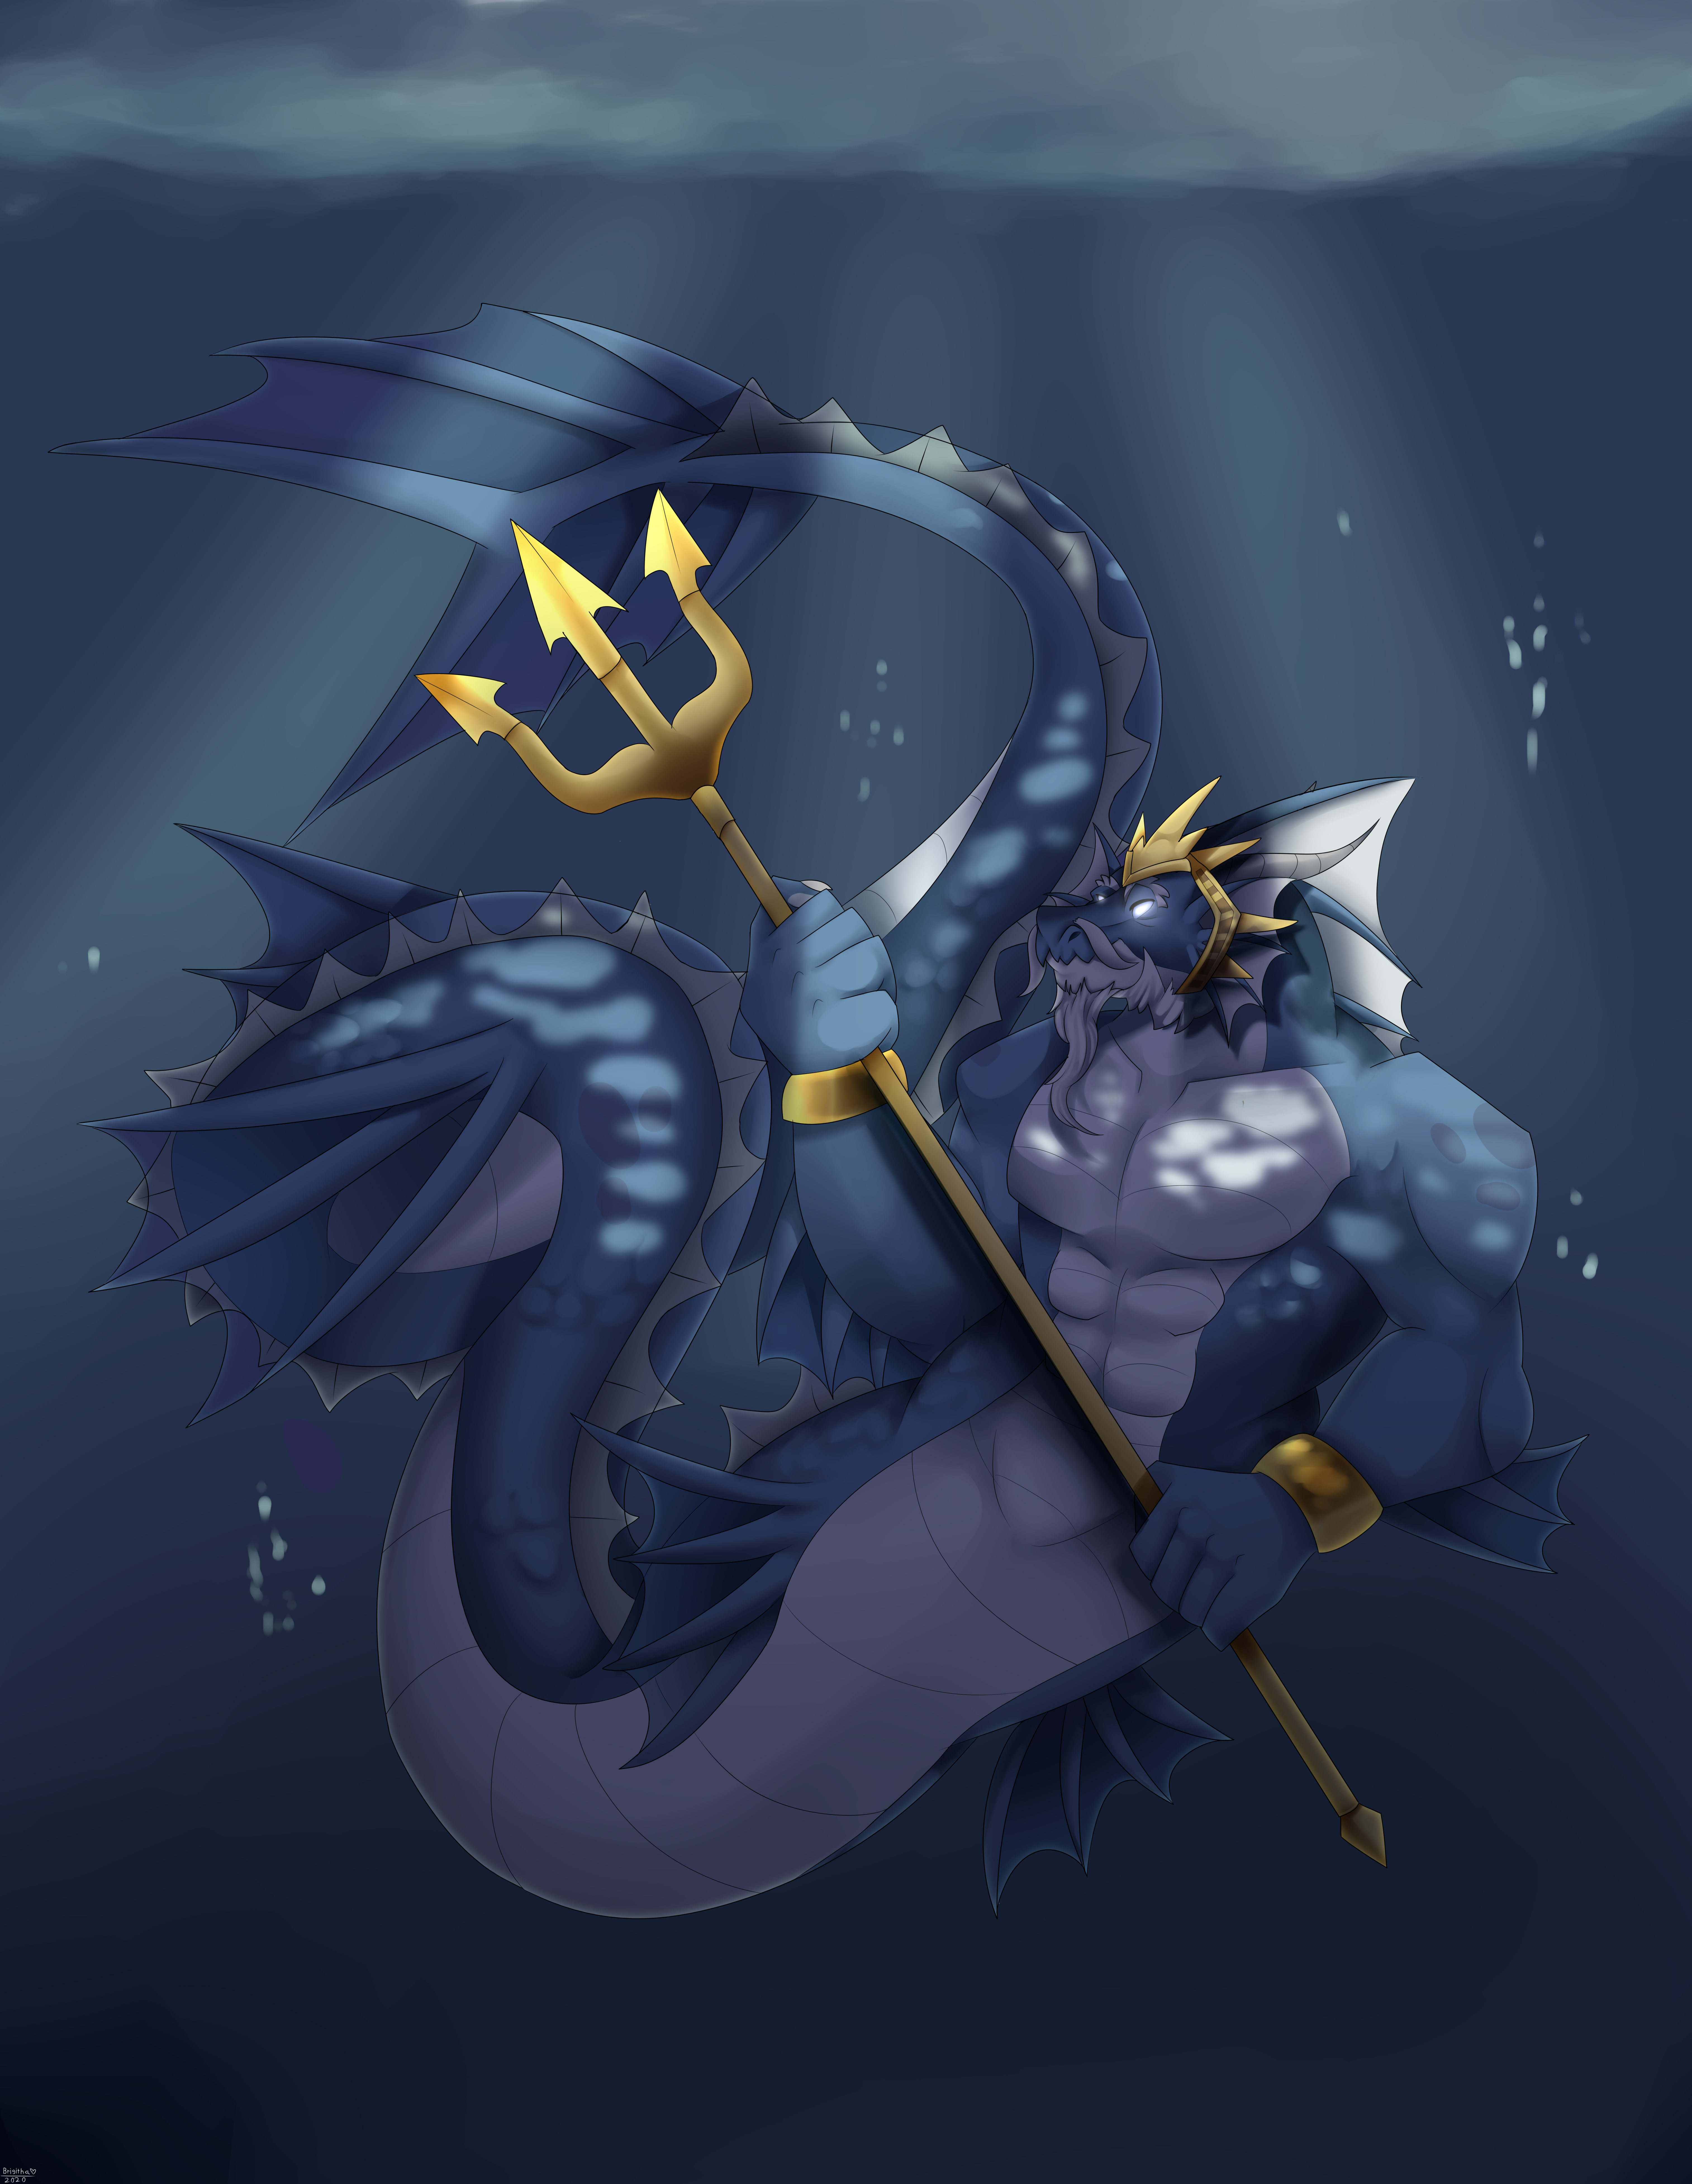 The King of Sea Dragon by FanDragonBrigitha on DeviantArt